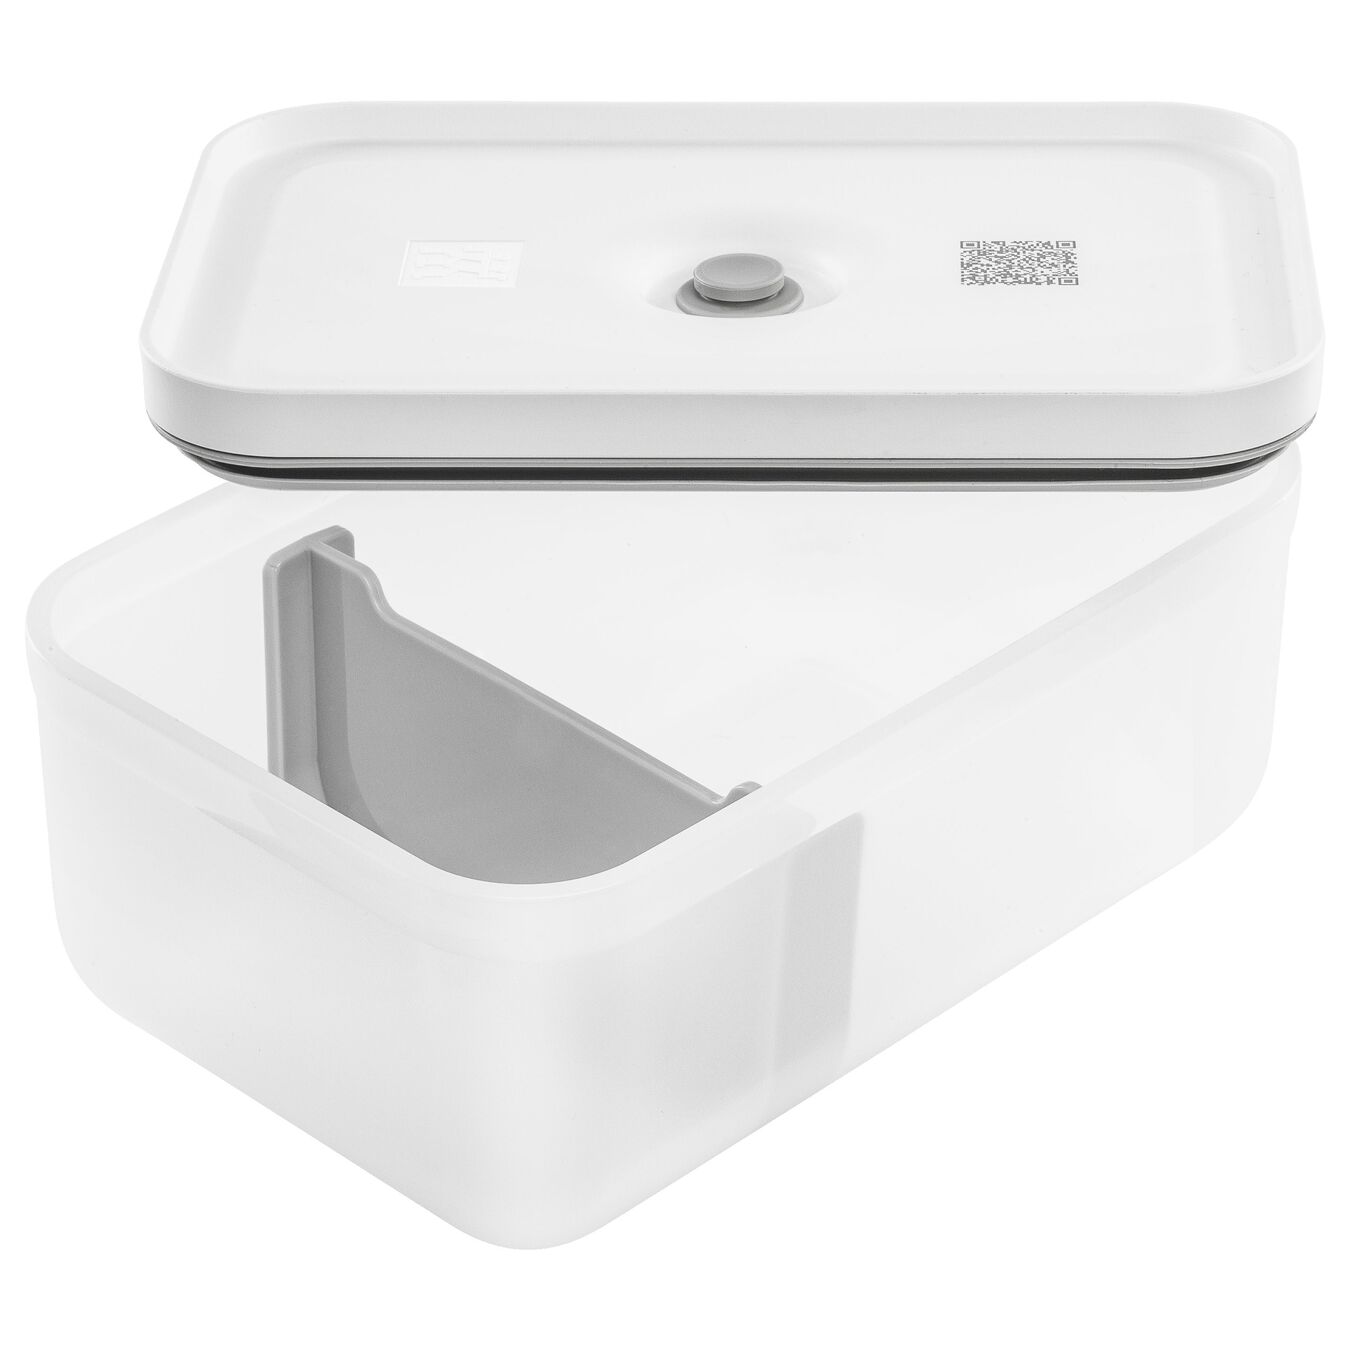 Lunch box sottovuoto L, plastica, semi trasparente-grigio,,large 5